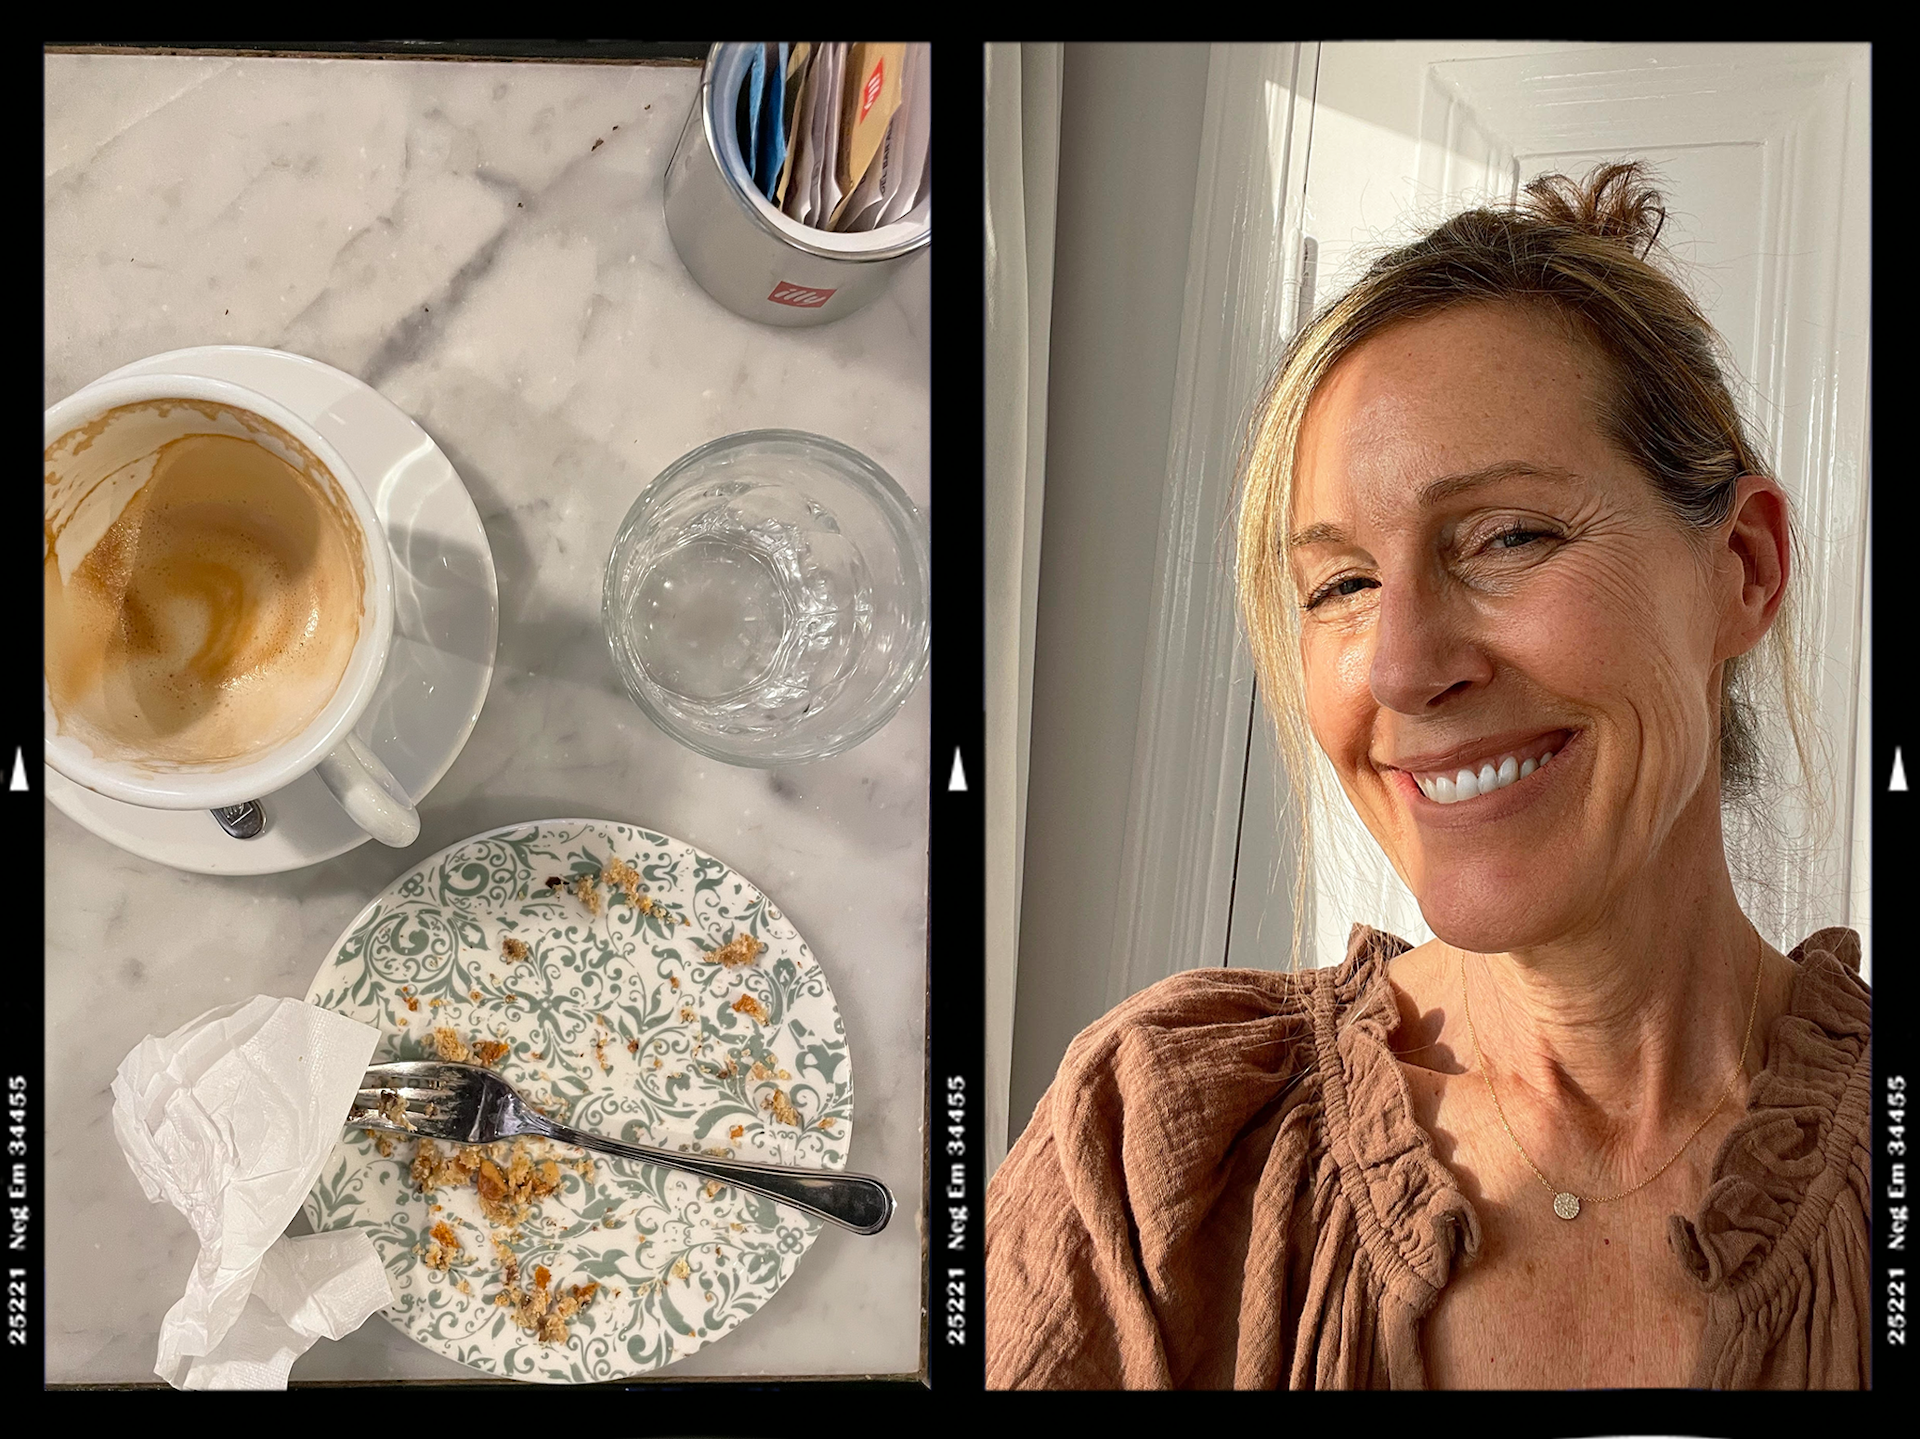 Till vänster: Italienskt kaffe Höger: Marcia DeSanctis selfie